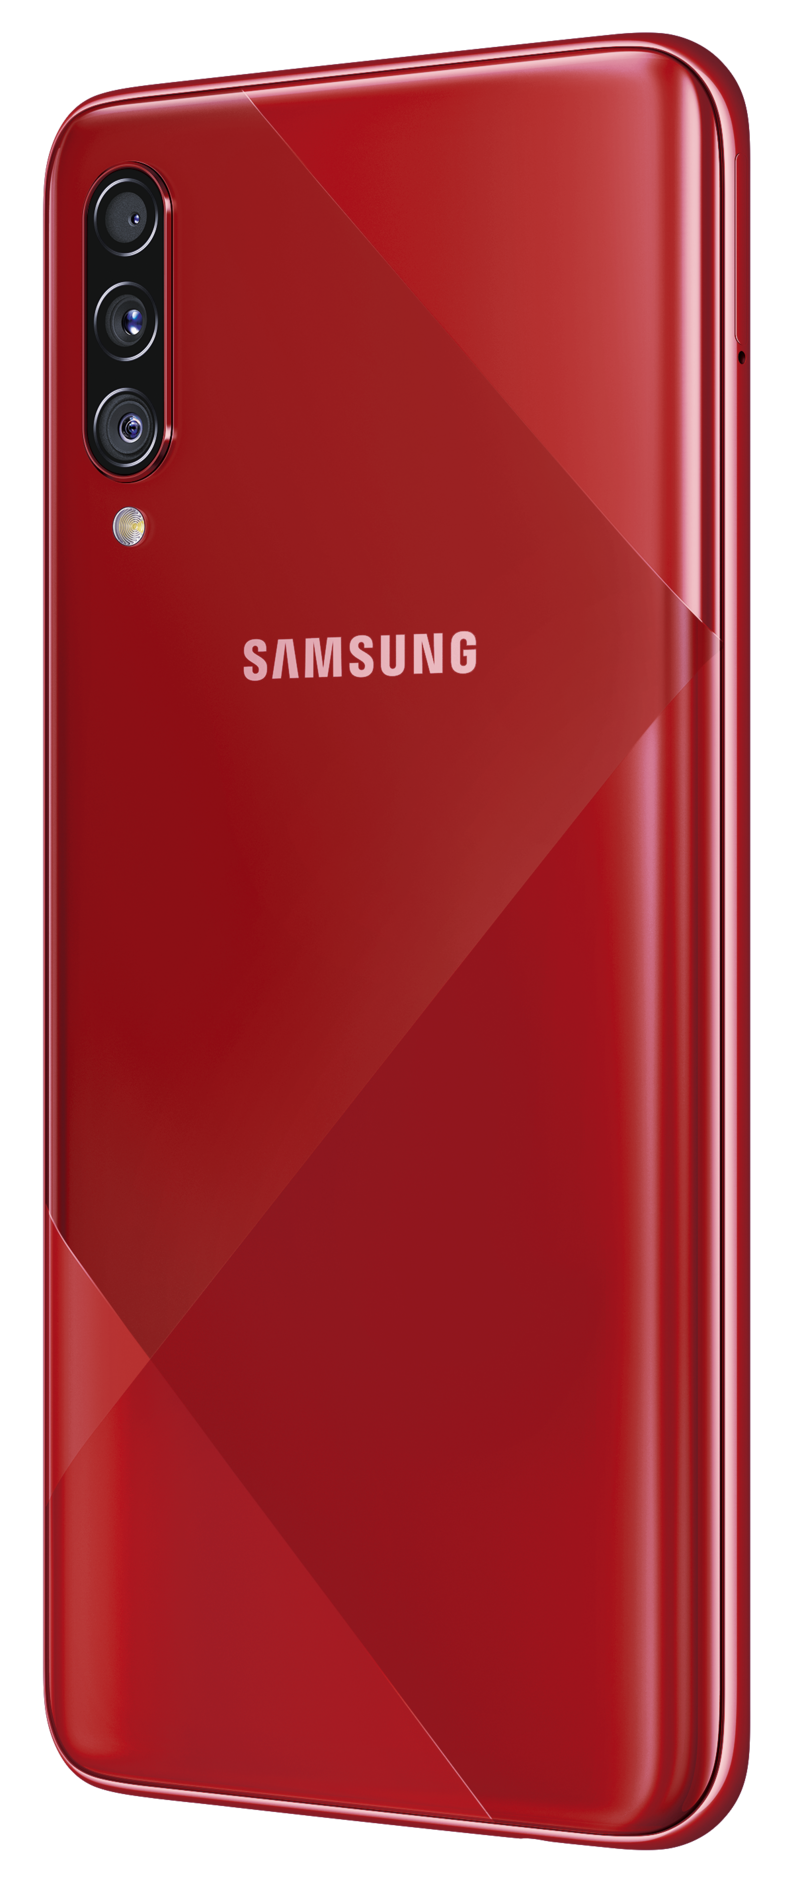 Samsung Galaxy A70s näyttää tyylikkäältä takaa